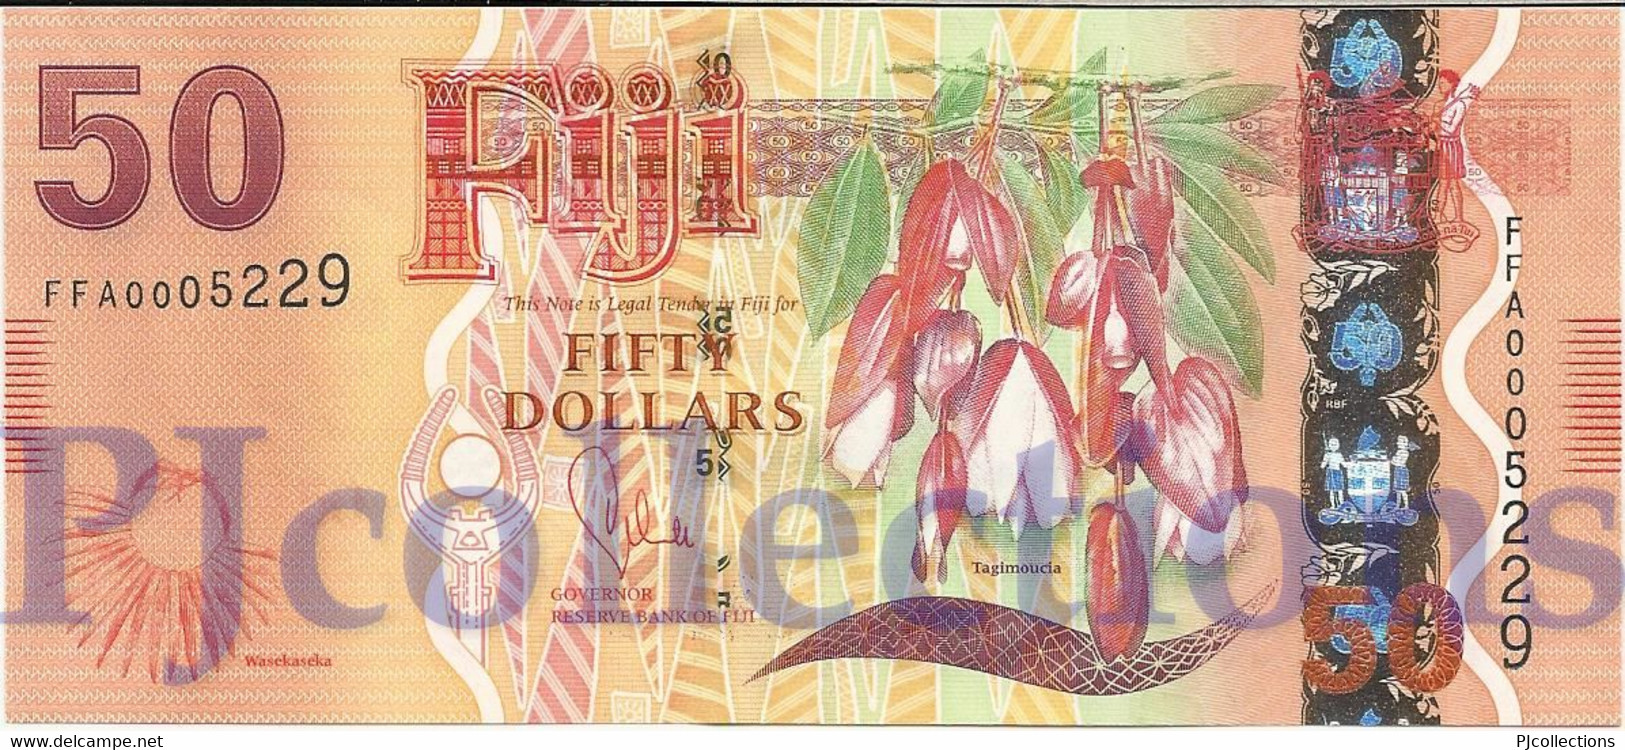 FIJI 50 DOLLARS 2013 PICK 118a UNC PREFIX "FFA" LOW SERIAL NUMBER - Fidji